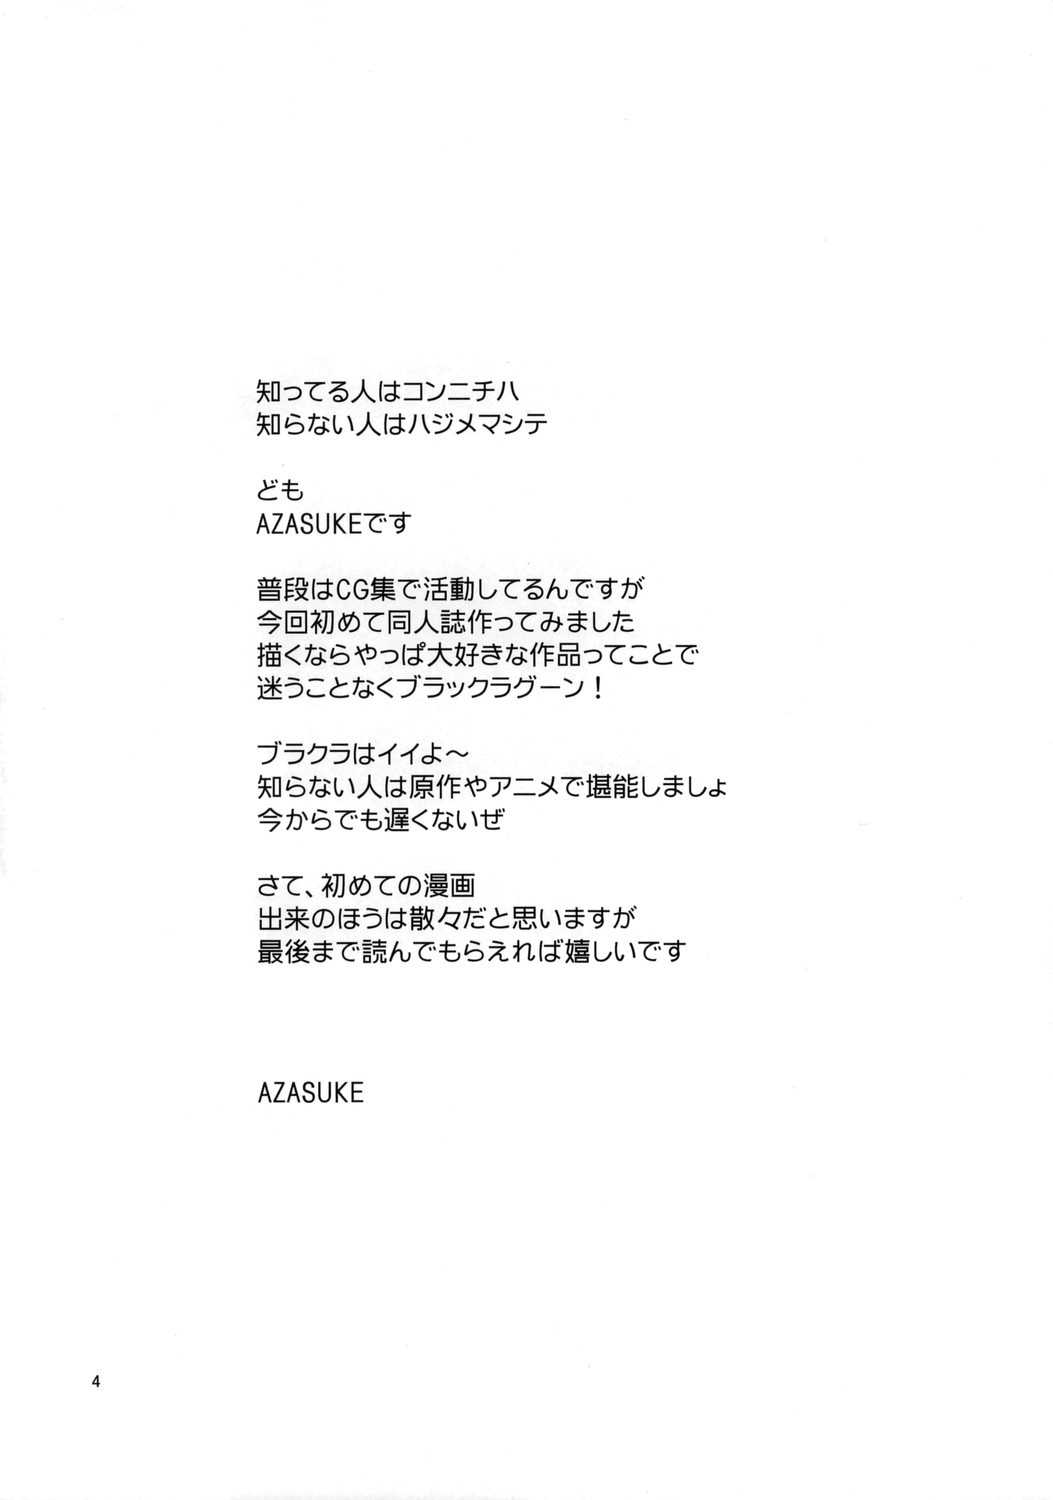 [Azasuke Wind] Distorted Love (Black Lagoon) [RUS] [AZASUKE WIND] Distorted Love (ブラック・ラグーン)